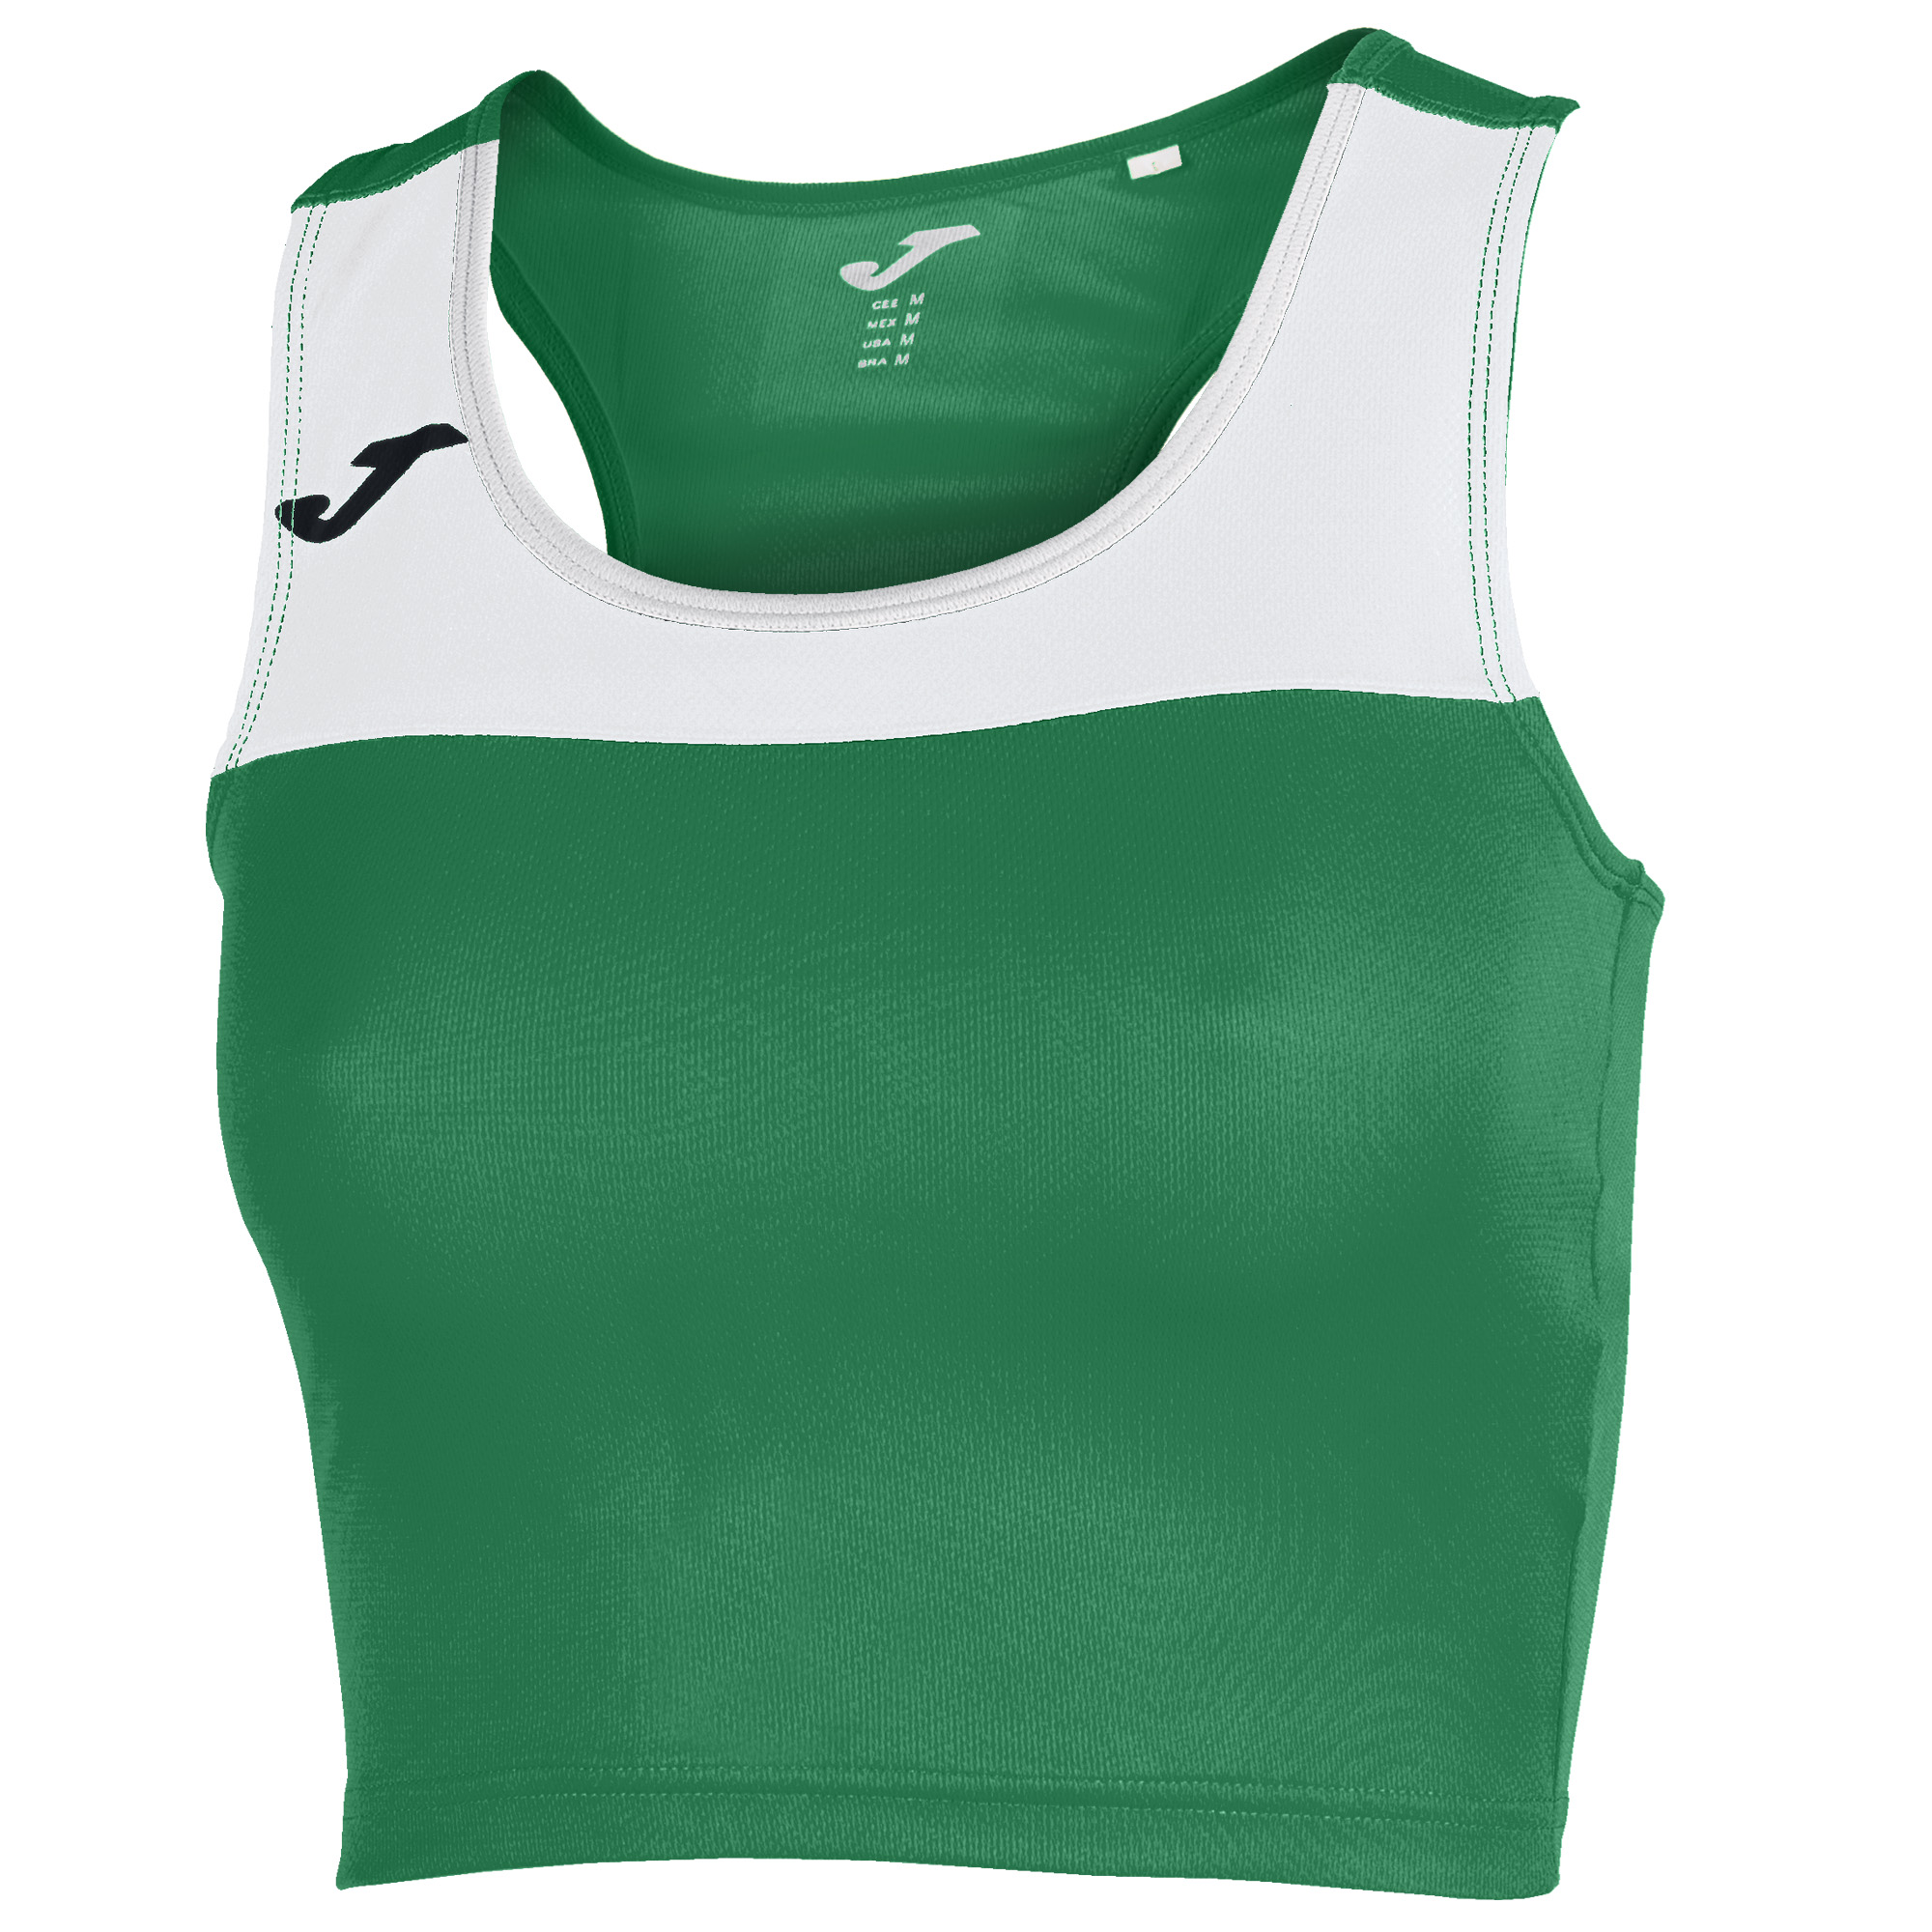 Волейбольный топ женский Joma Race Зеленый/Белый